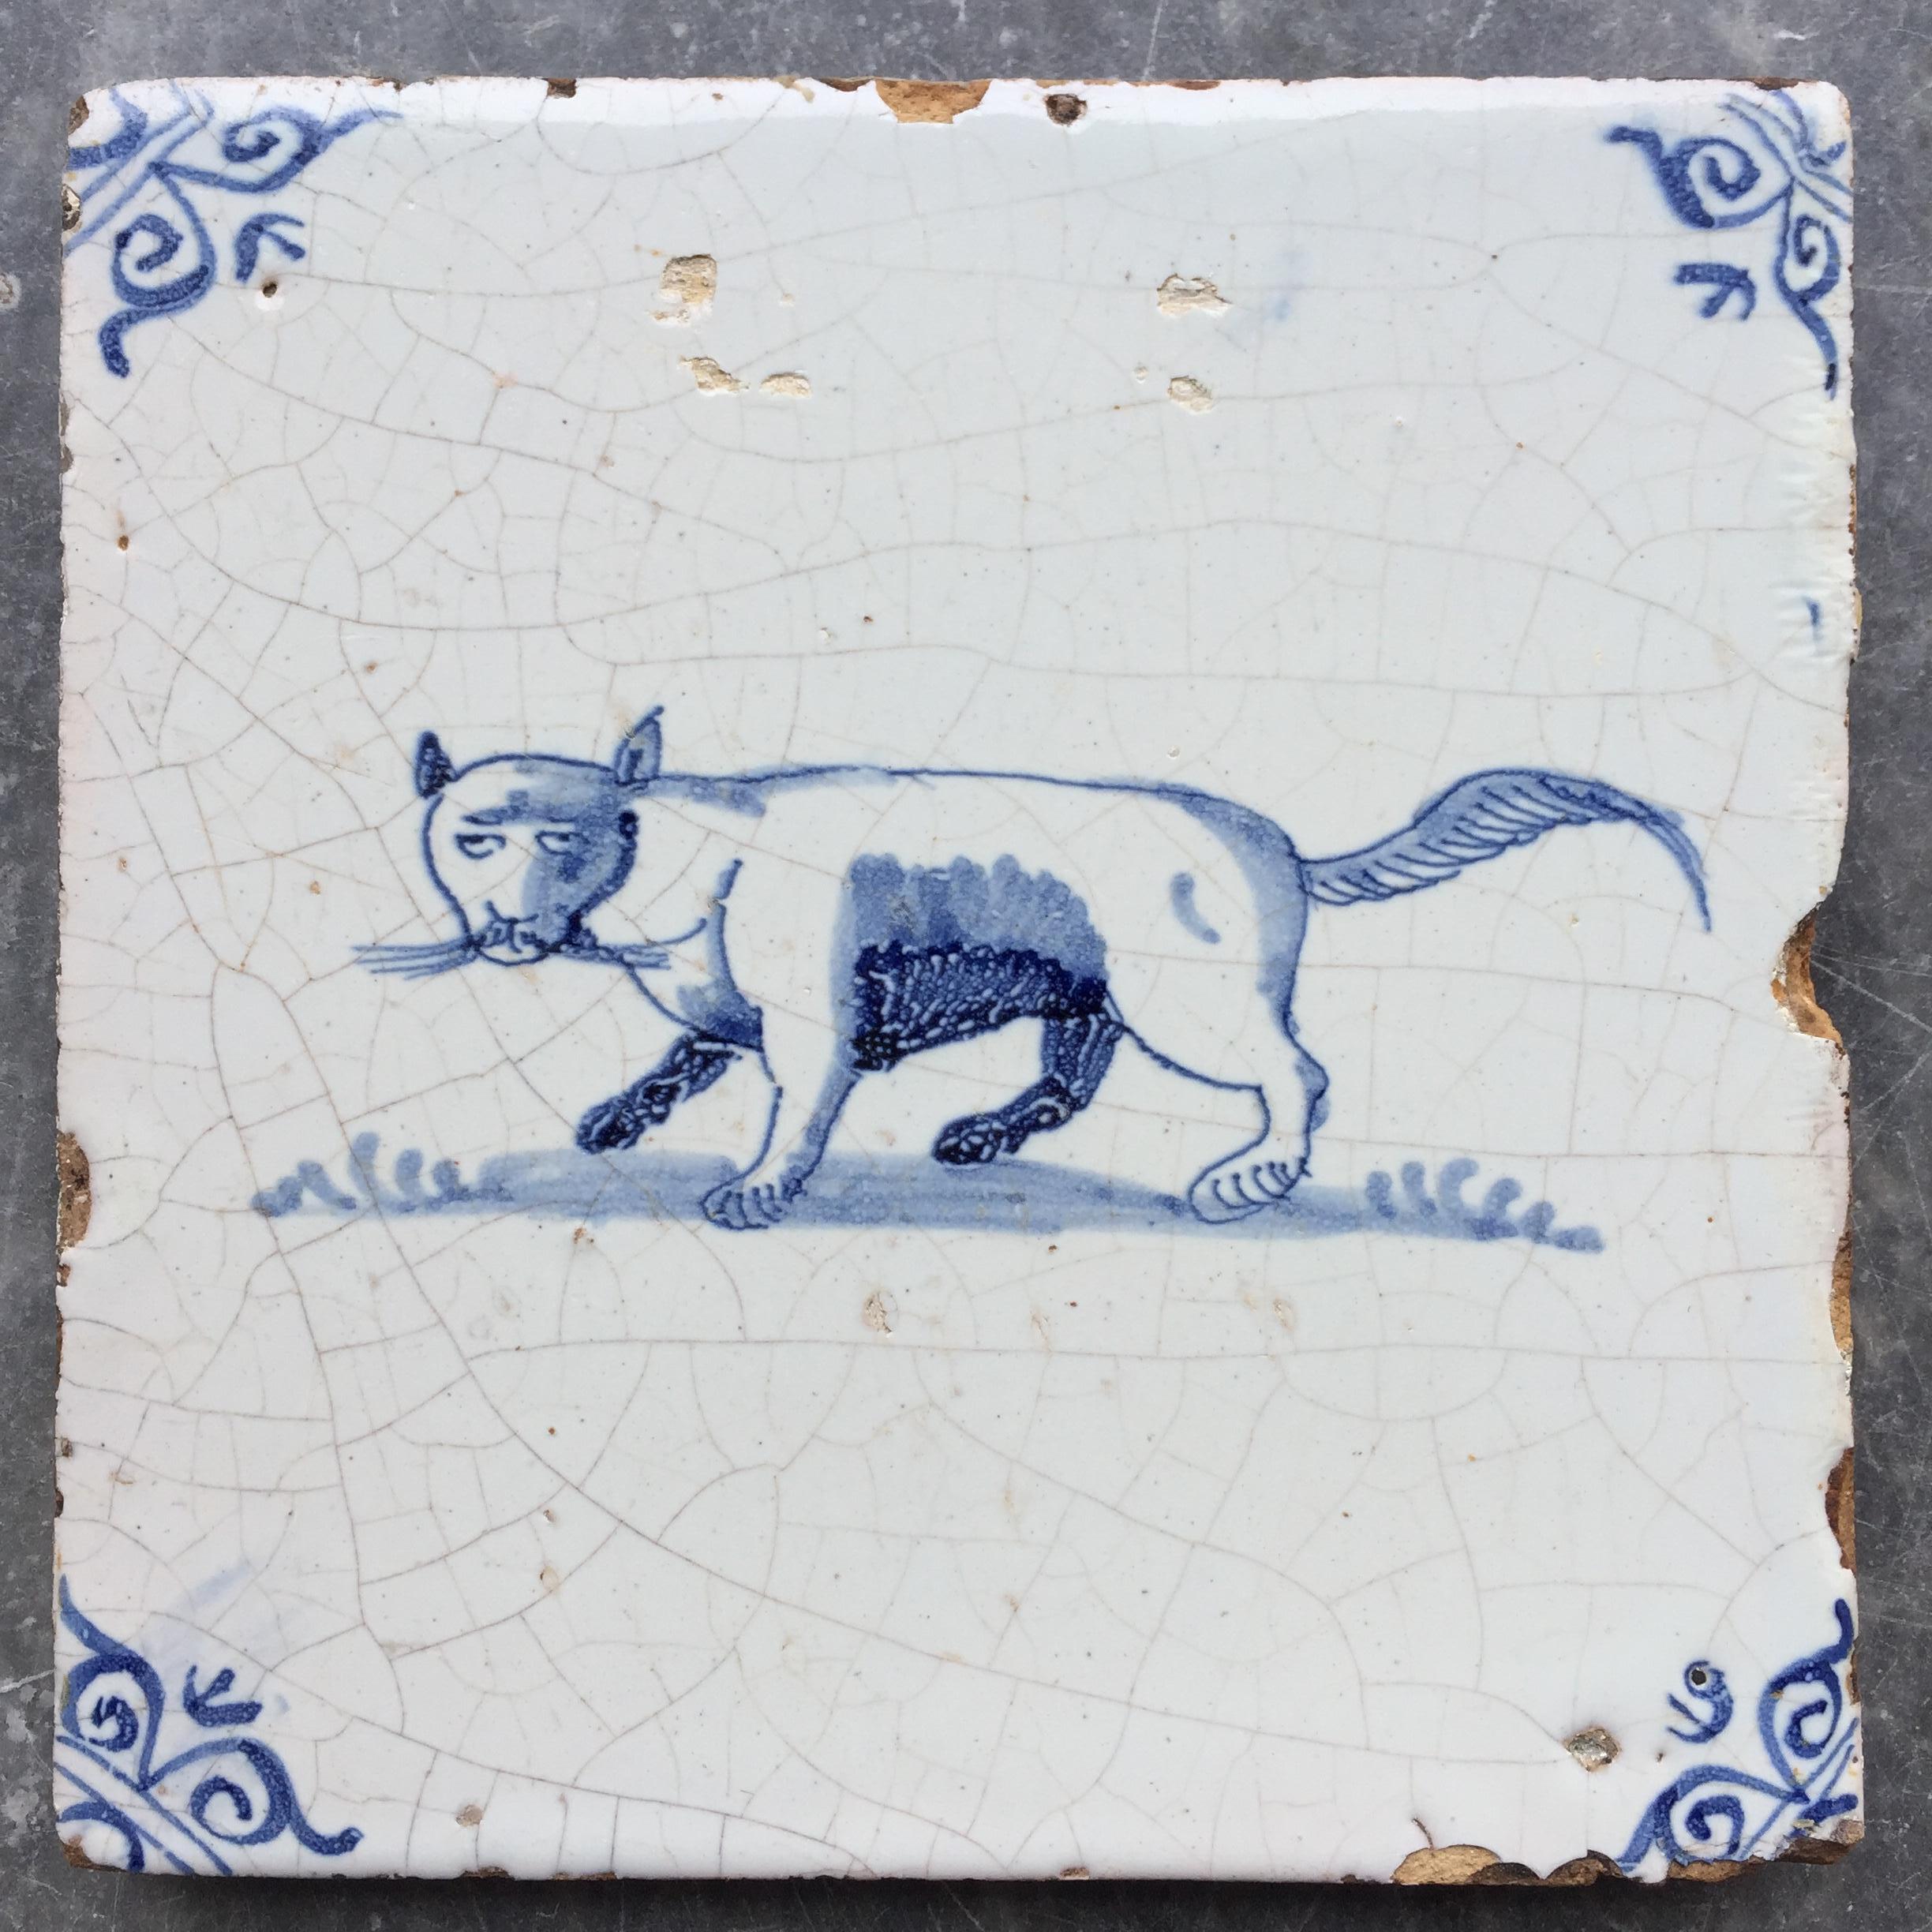 Die Niederlande
CIRCA 1630 - 1660

Eine seltene blau-weiße Fliese mit dem Dekor einer schönen großen Katze mit großen Schnurrhaaren!

Katzen sind recht selten auf Fliesen abgebildet, warum, ist unbekannt.

Mit kleinen Ochsenköpfen als